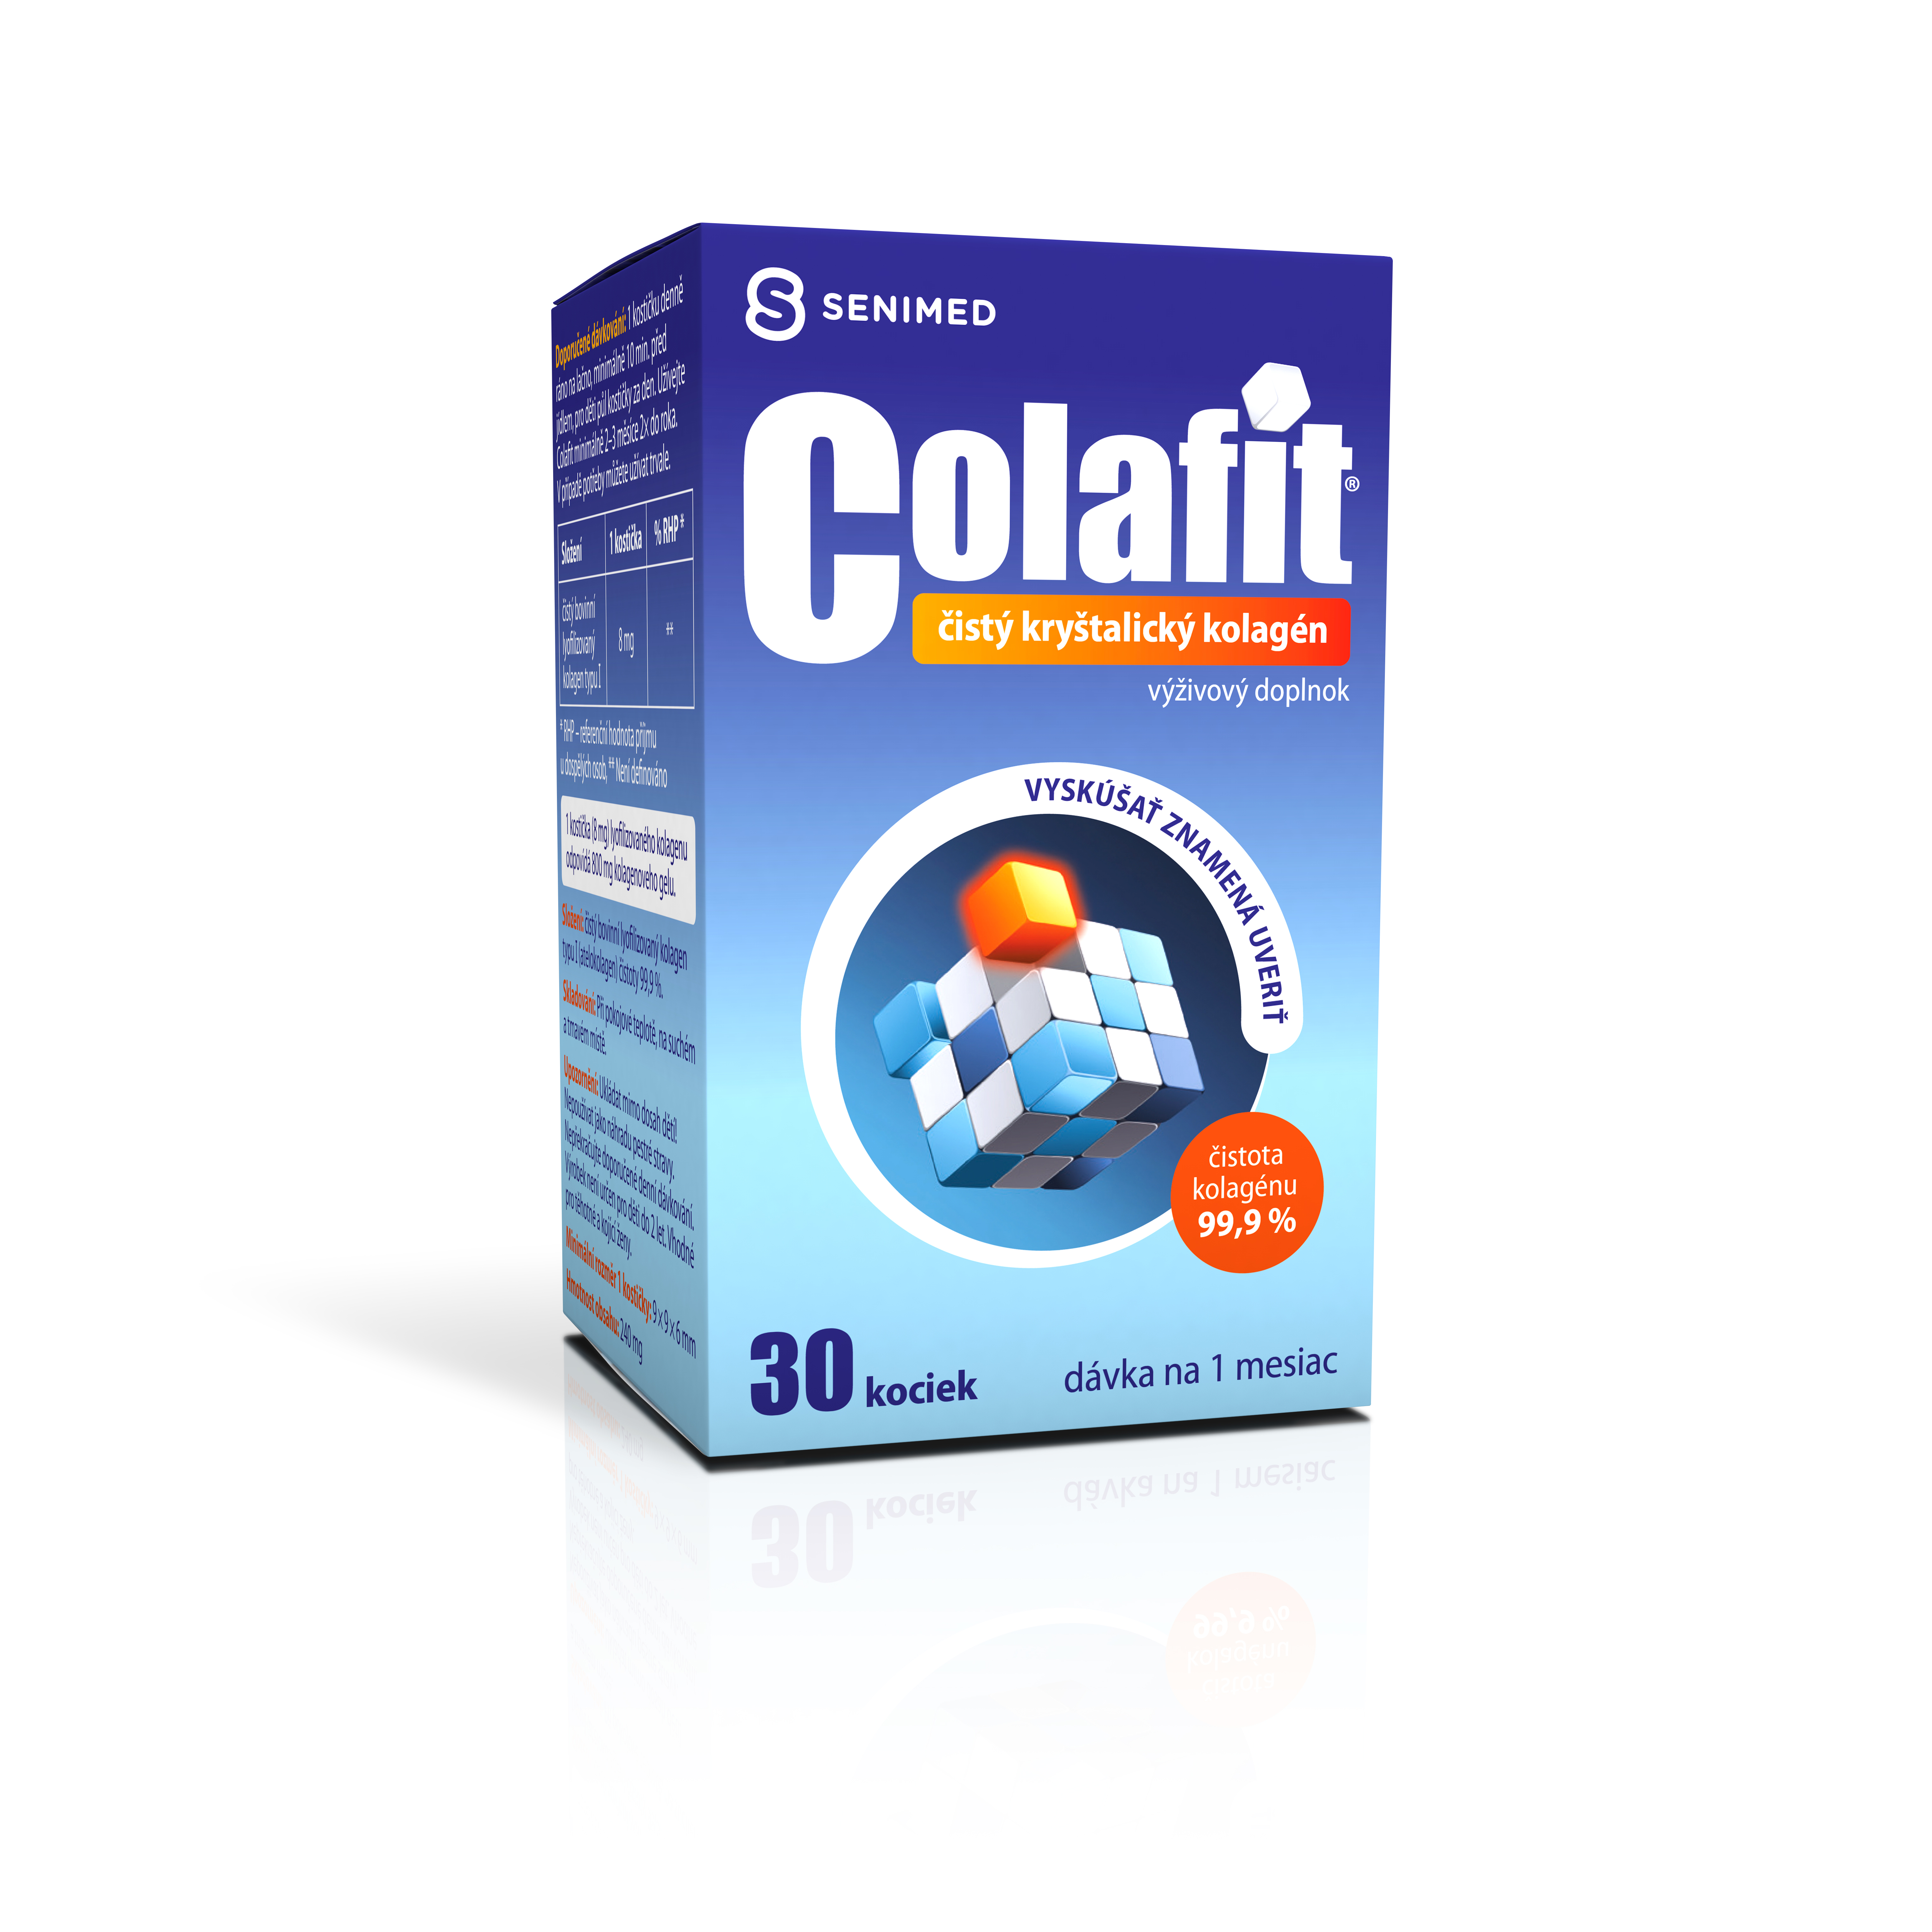 Colafit kocky – rôzne veľké balenia